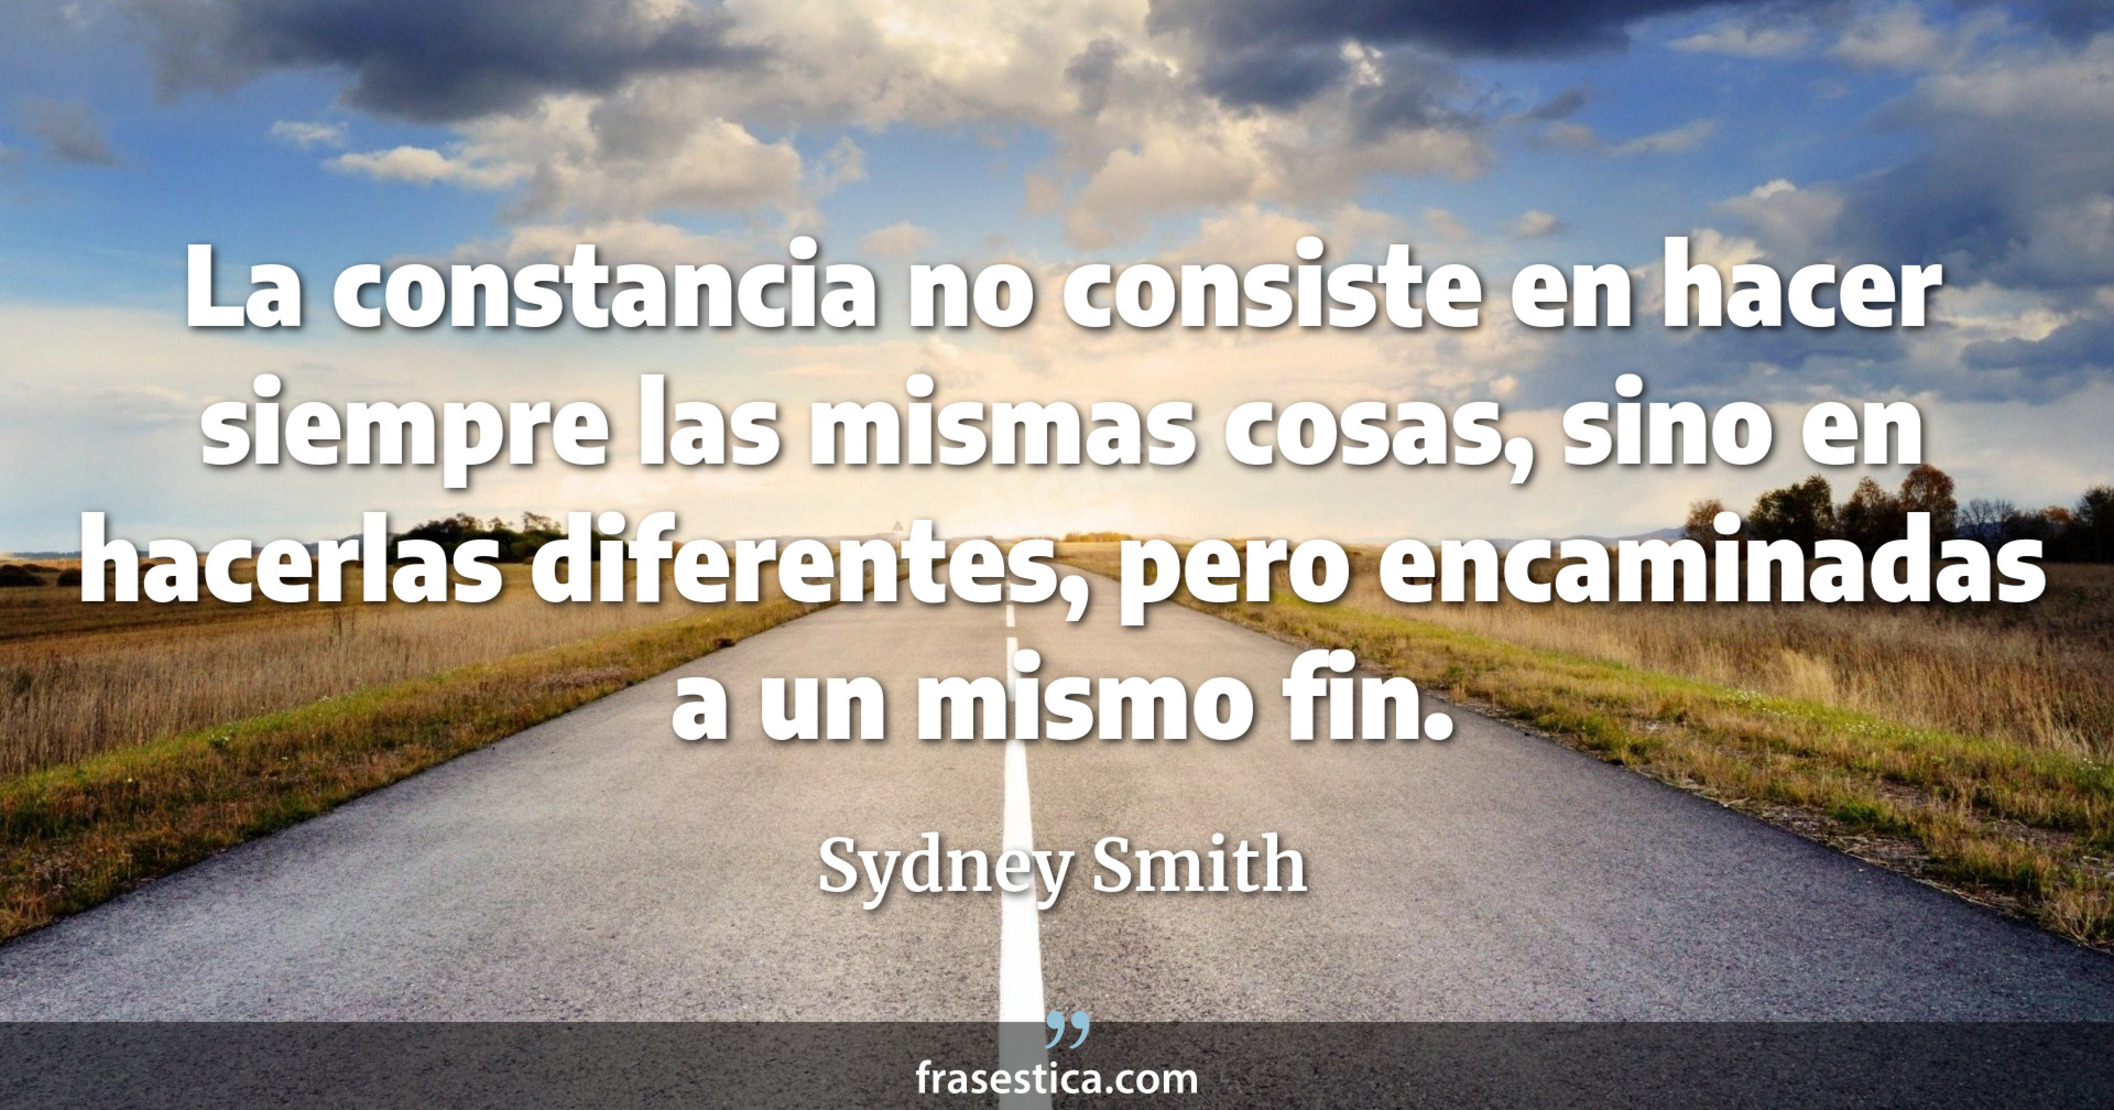 La constancia no consiste en hacer siempre las mismas cosas, sino en hacerlas diferentes, pero encaminadas a un mismo fin. - Sydney Smith